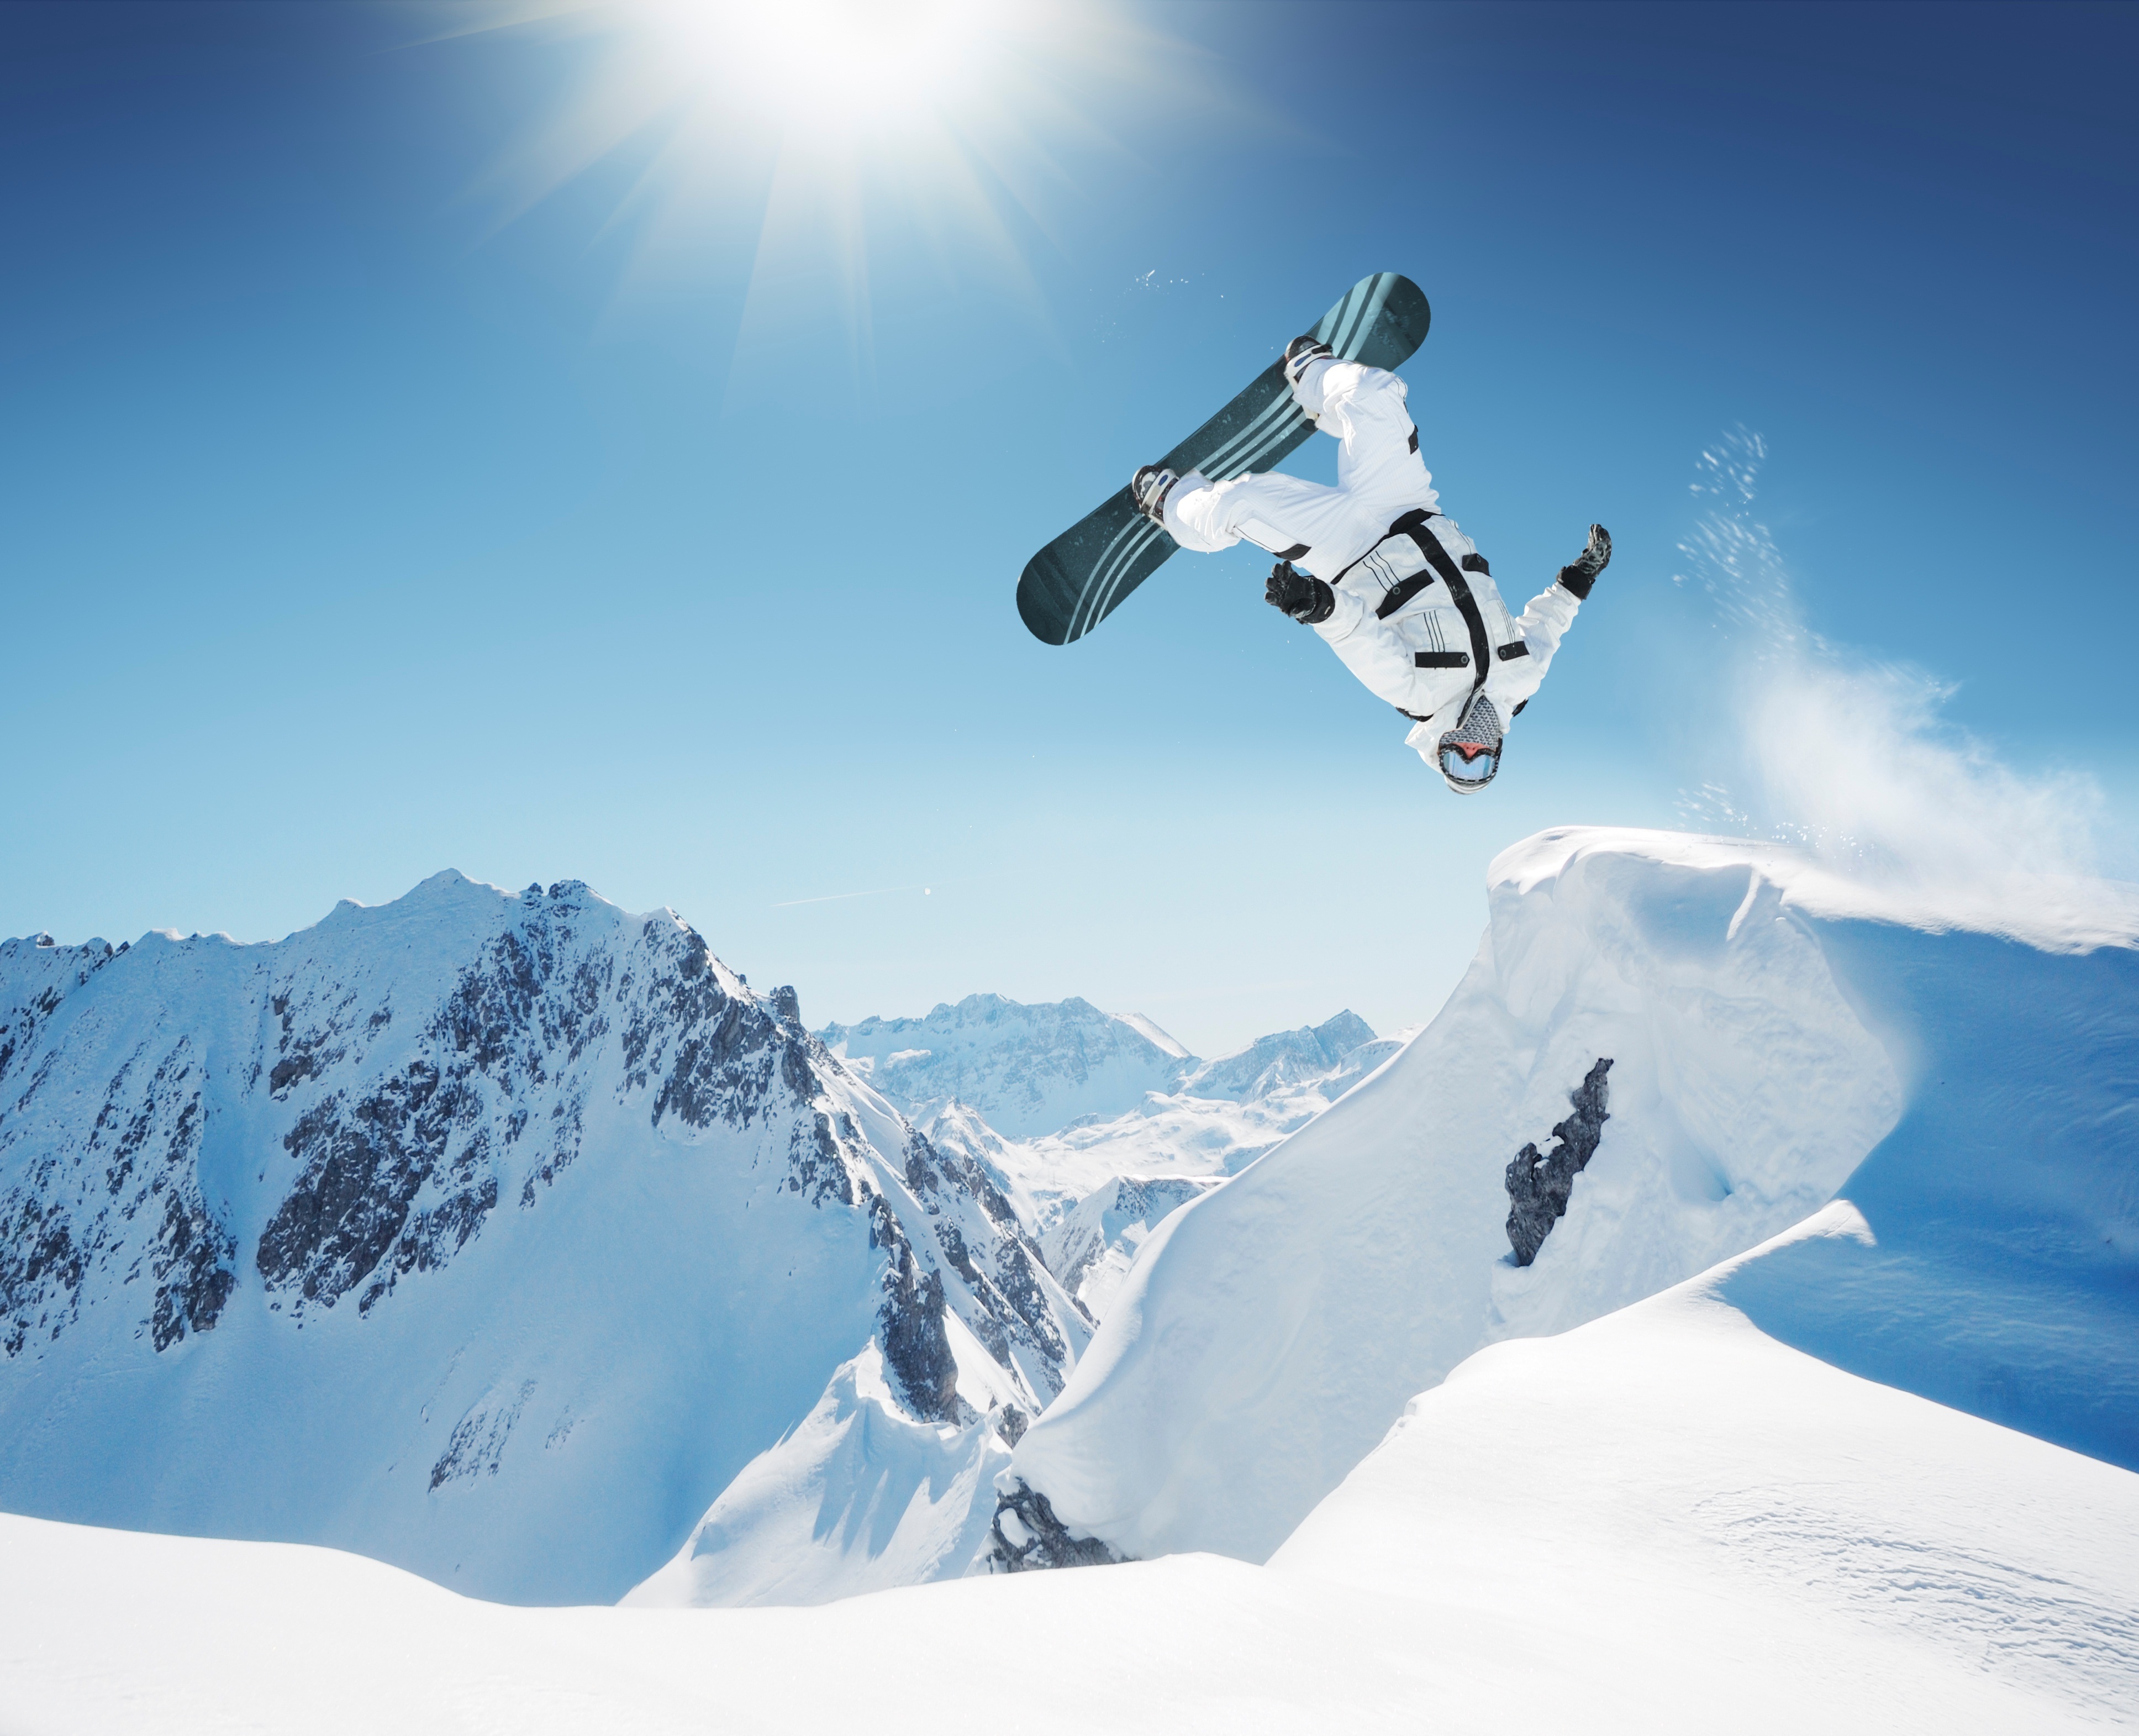 snowboard wallpaper,skier,snowboard,snow,extreme sport,snowboarding